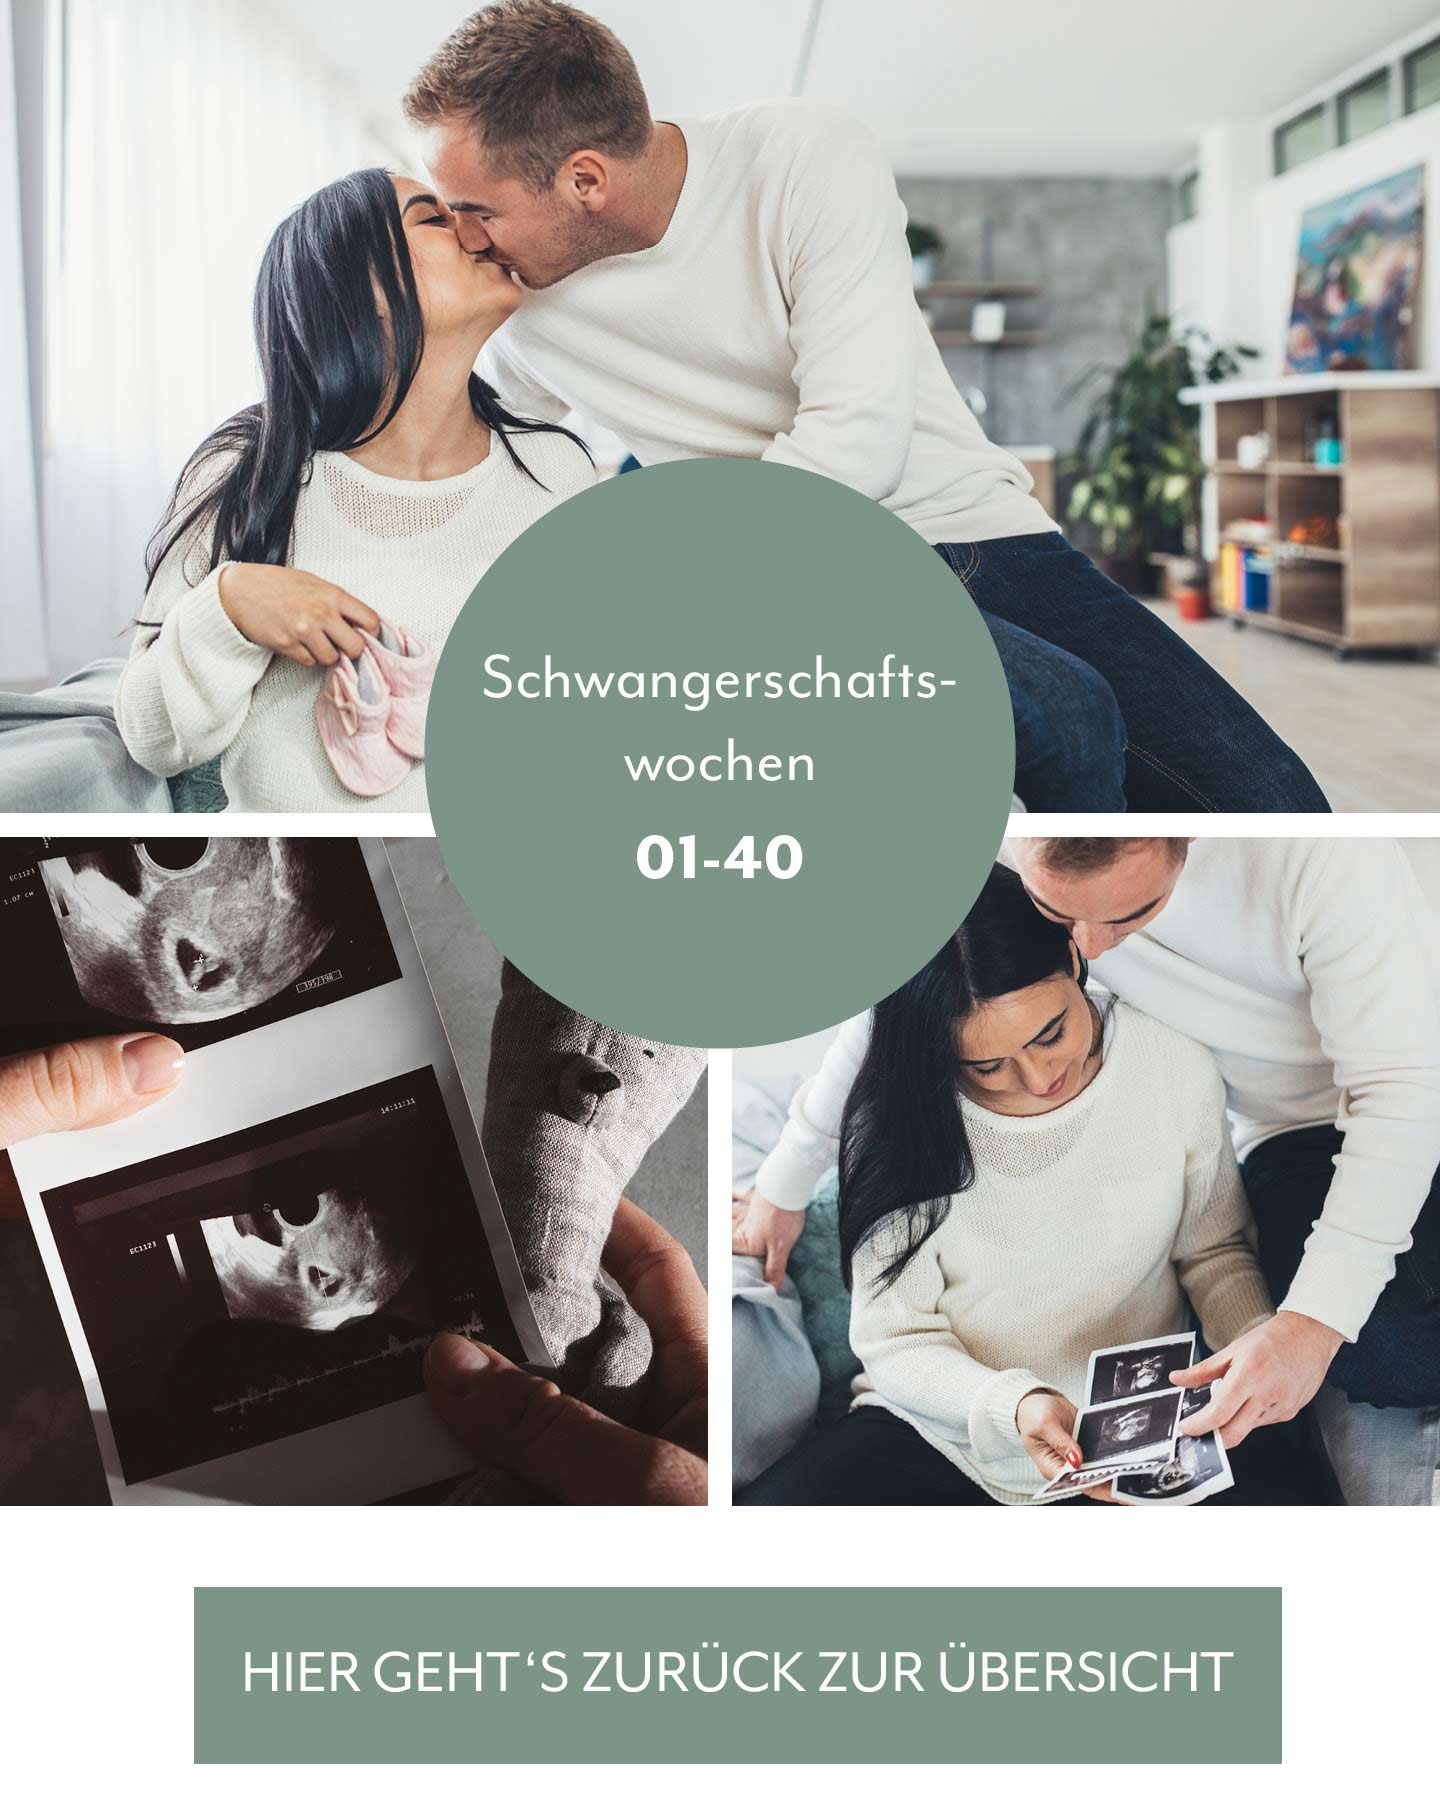 Schwangerschaftswochen Überblick: Paar guckt Ultraschallbild an.